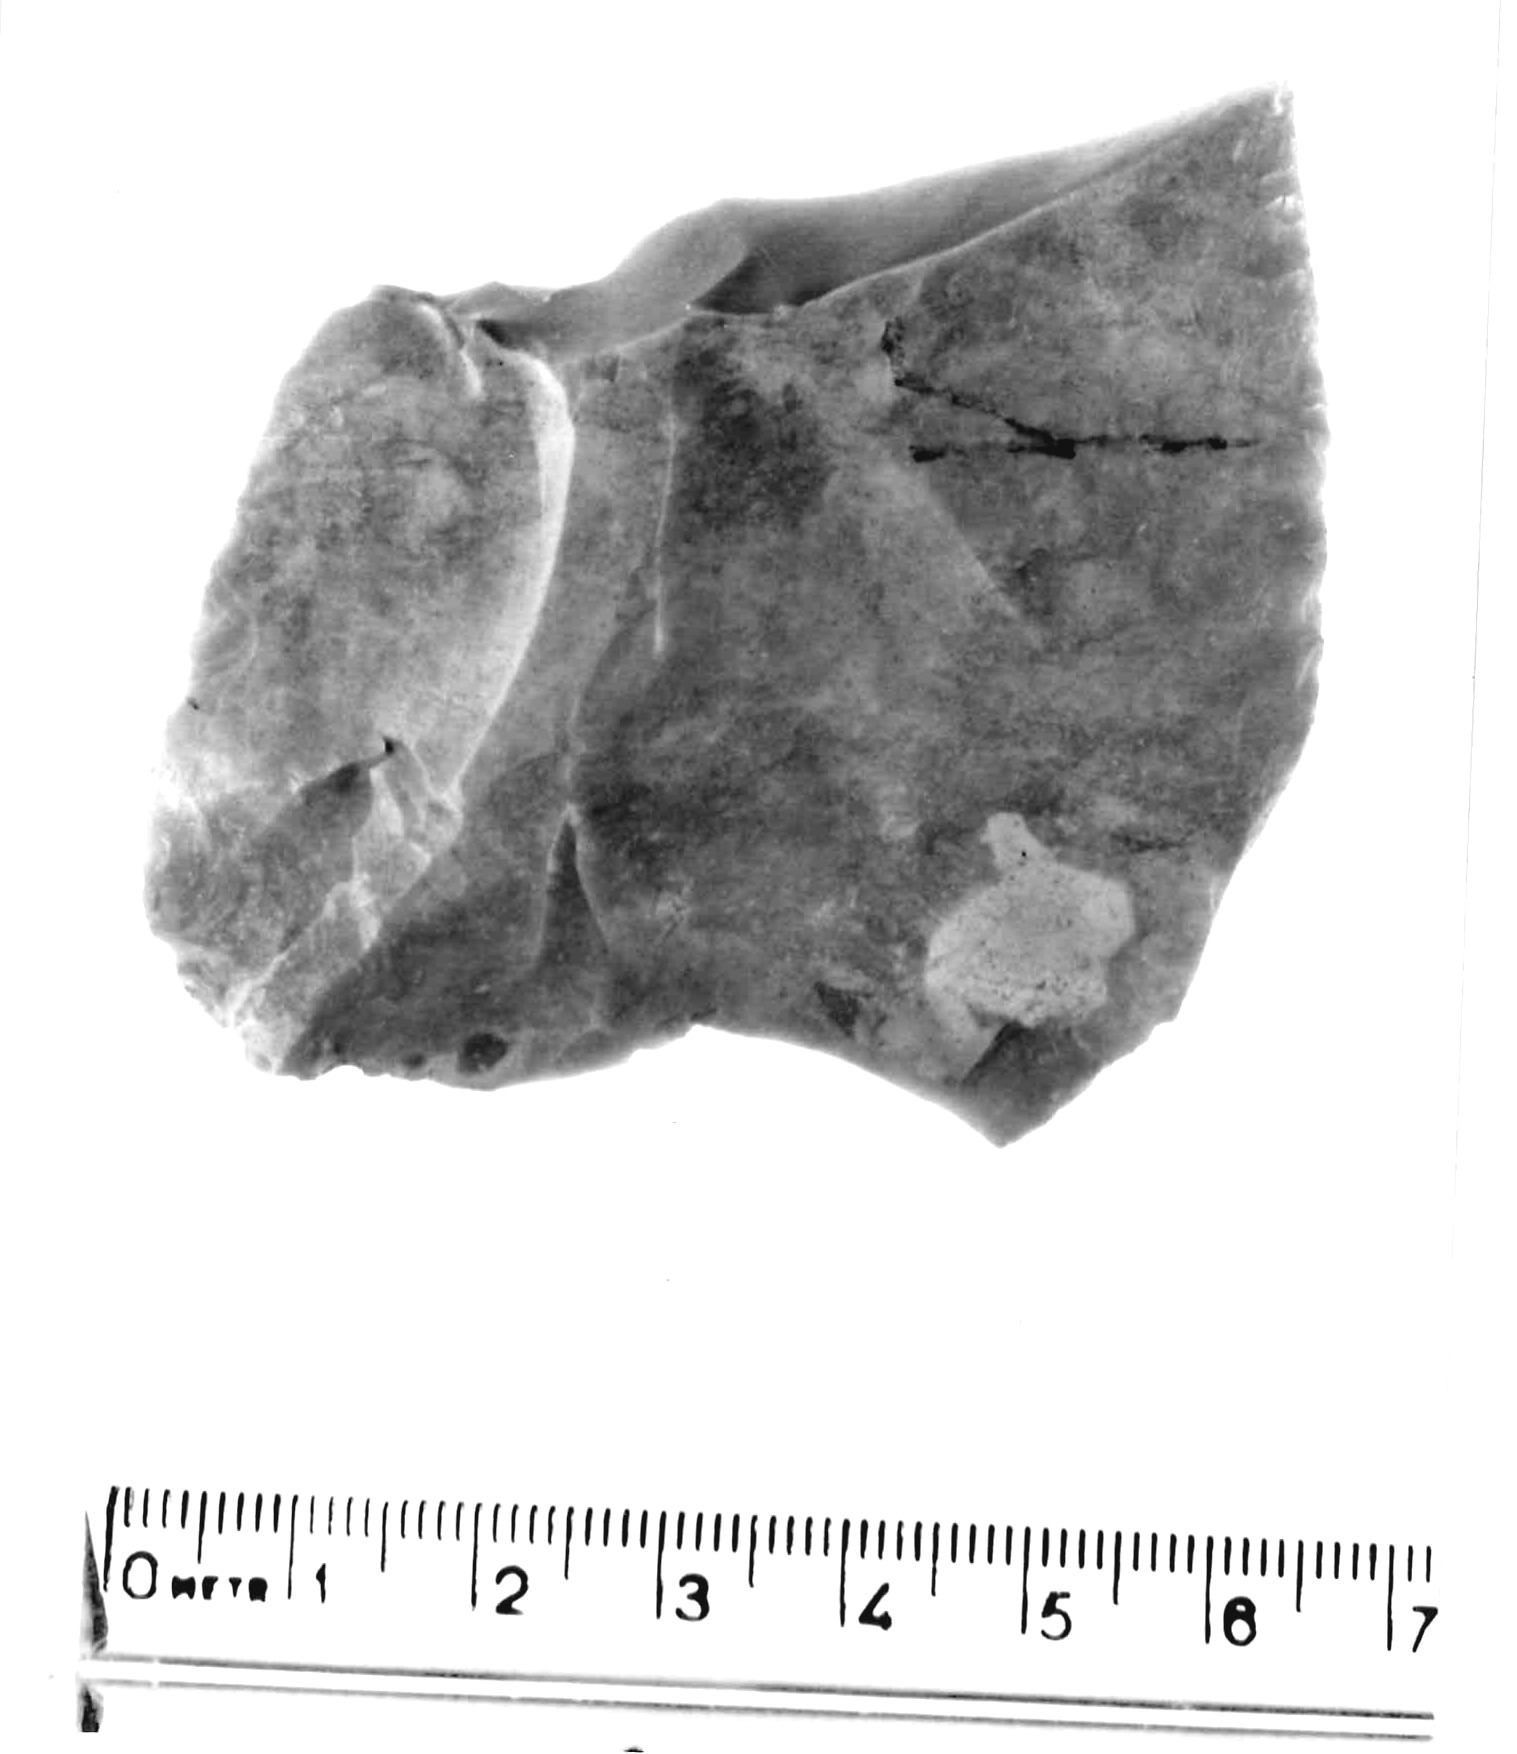 raschiatoio laterale - musteriano (paleolitico medio)